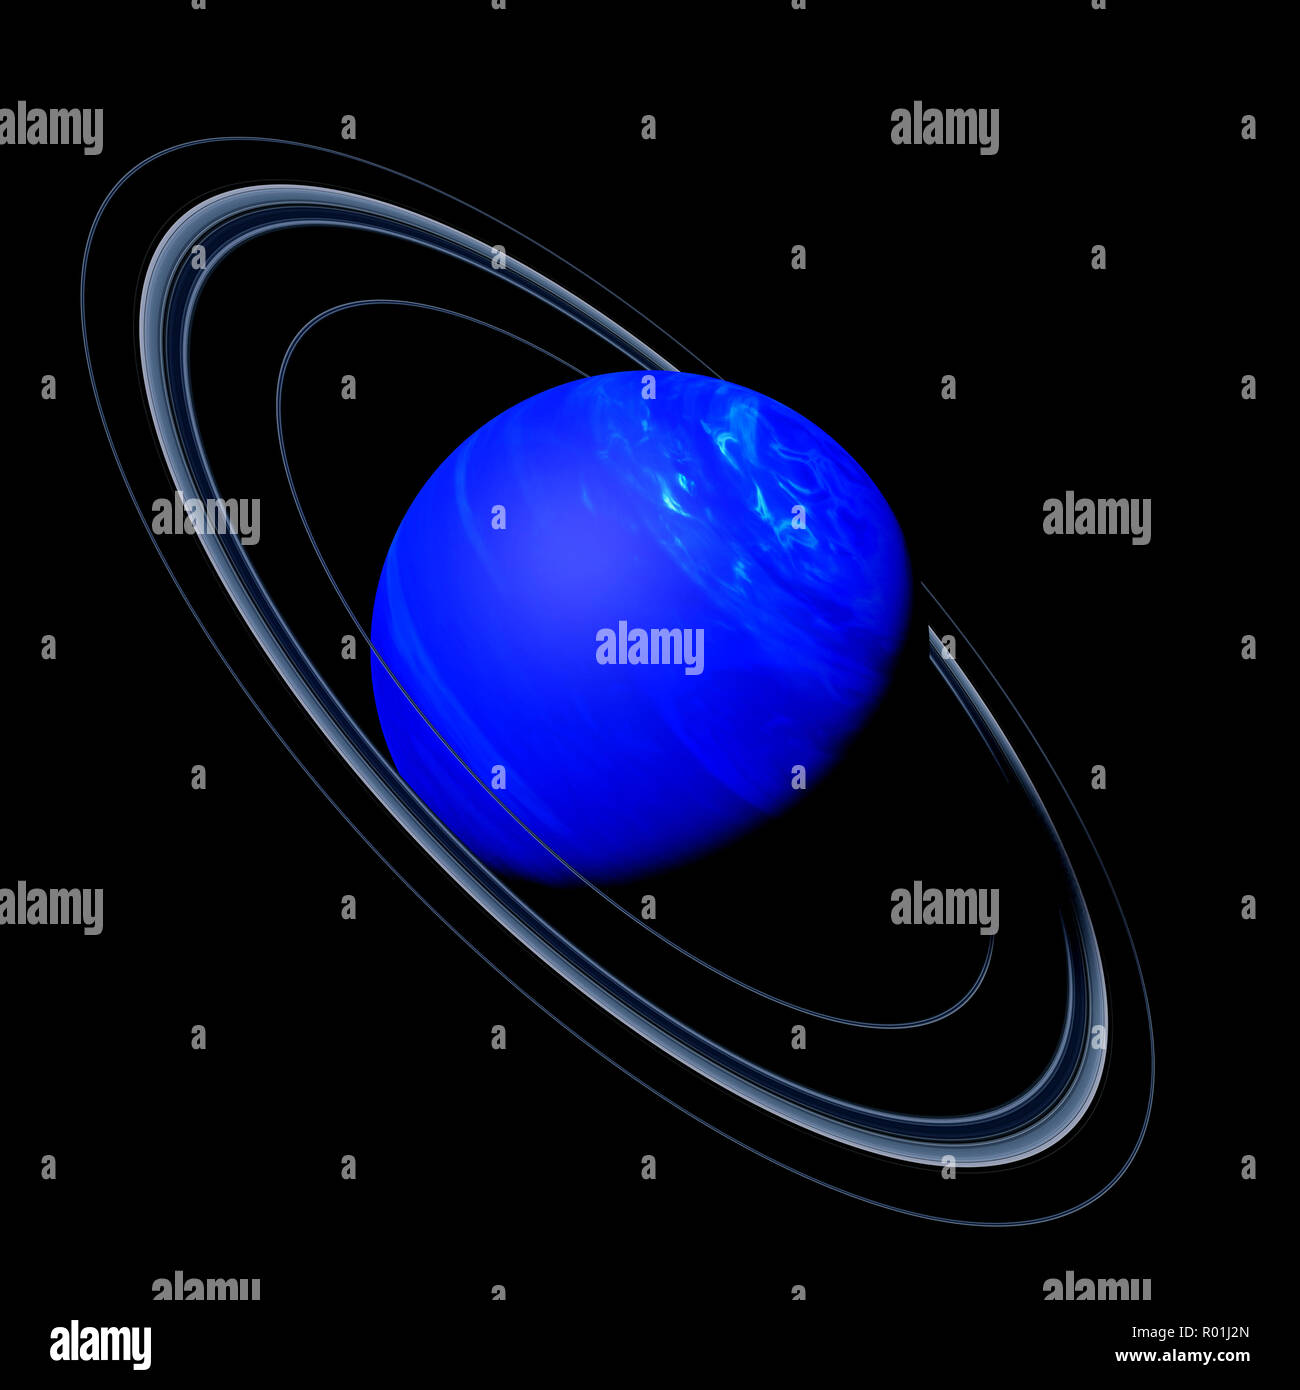 Uranus - Wikipedia